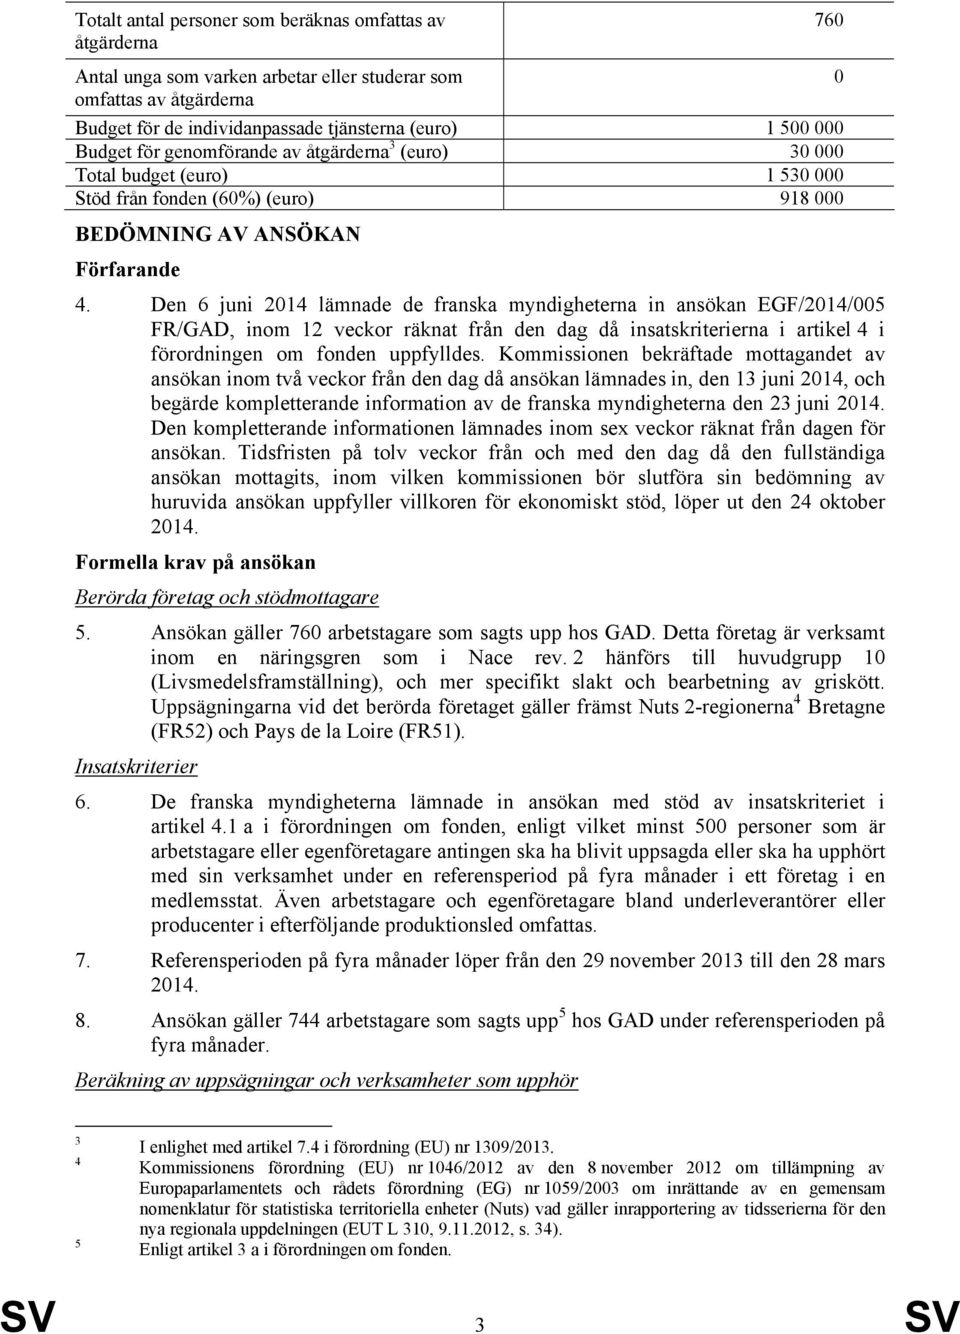 Den 6 juni 2014 lämnade de franska myndigheterna in ansökan EGF/2014/005 FR/GAD, inom 12 veckor räknat från den dag då insatskriterierna i artikel 4 i förordningen om fonden uppfylldes.